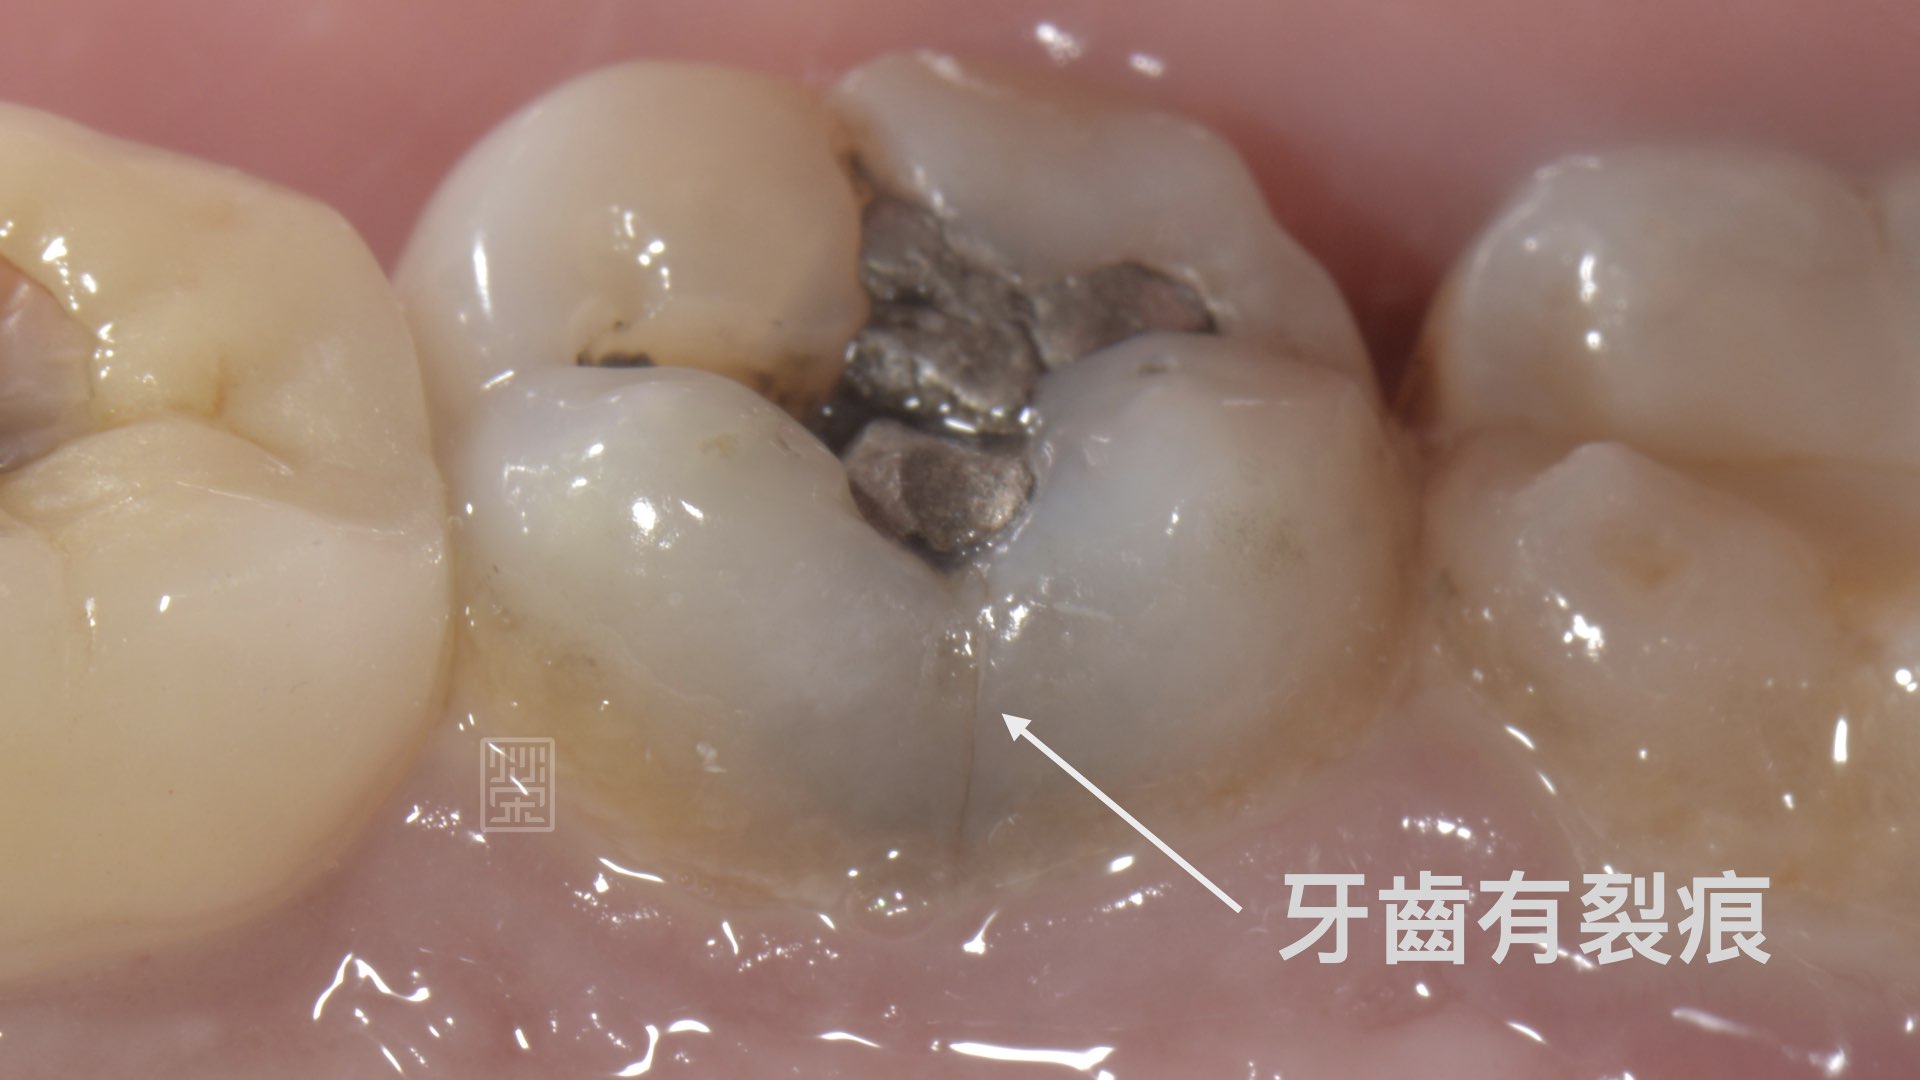 牙齿出现这种裂纹正常吗？专家告诉你什么情况才要去看医生 - 知乎